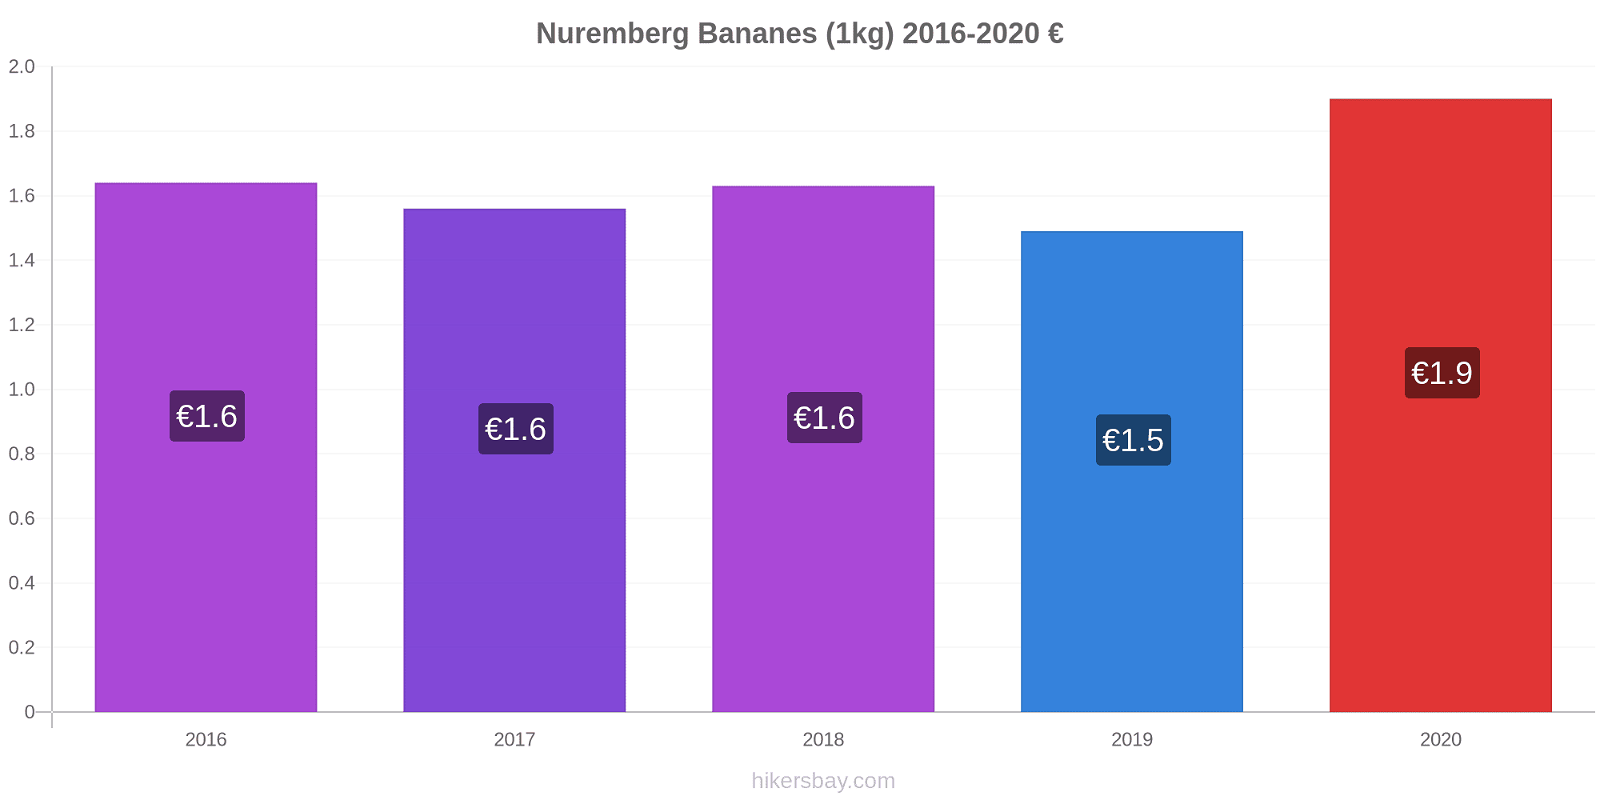 Nuremberg changements de prix Bananes (1kg) hikersbay.com